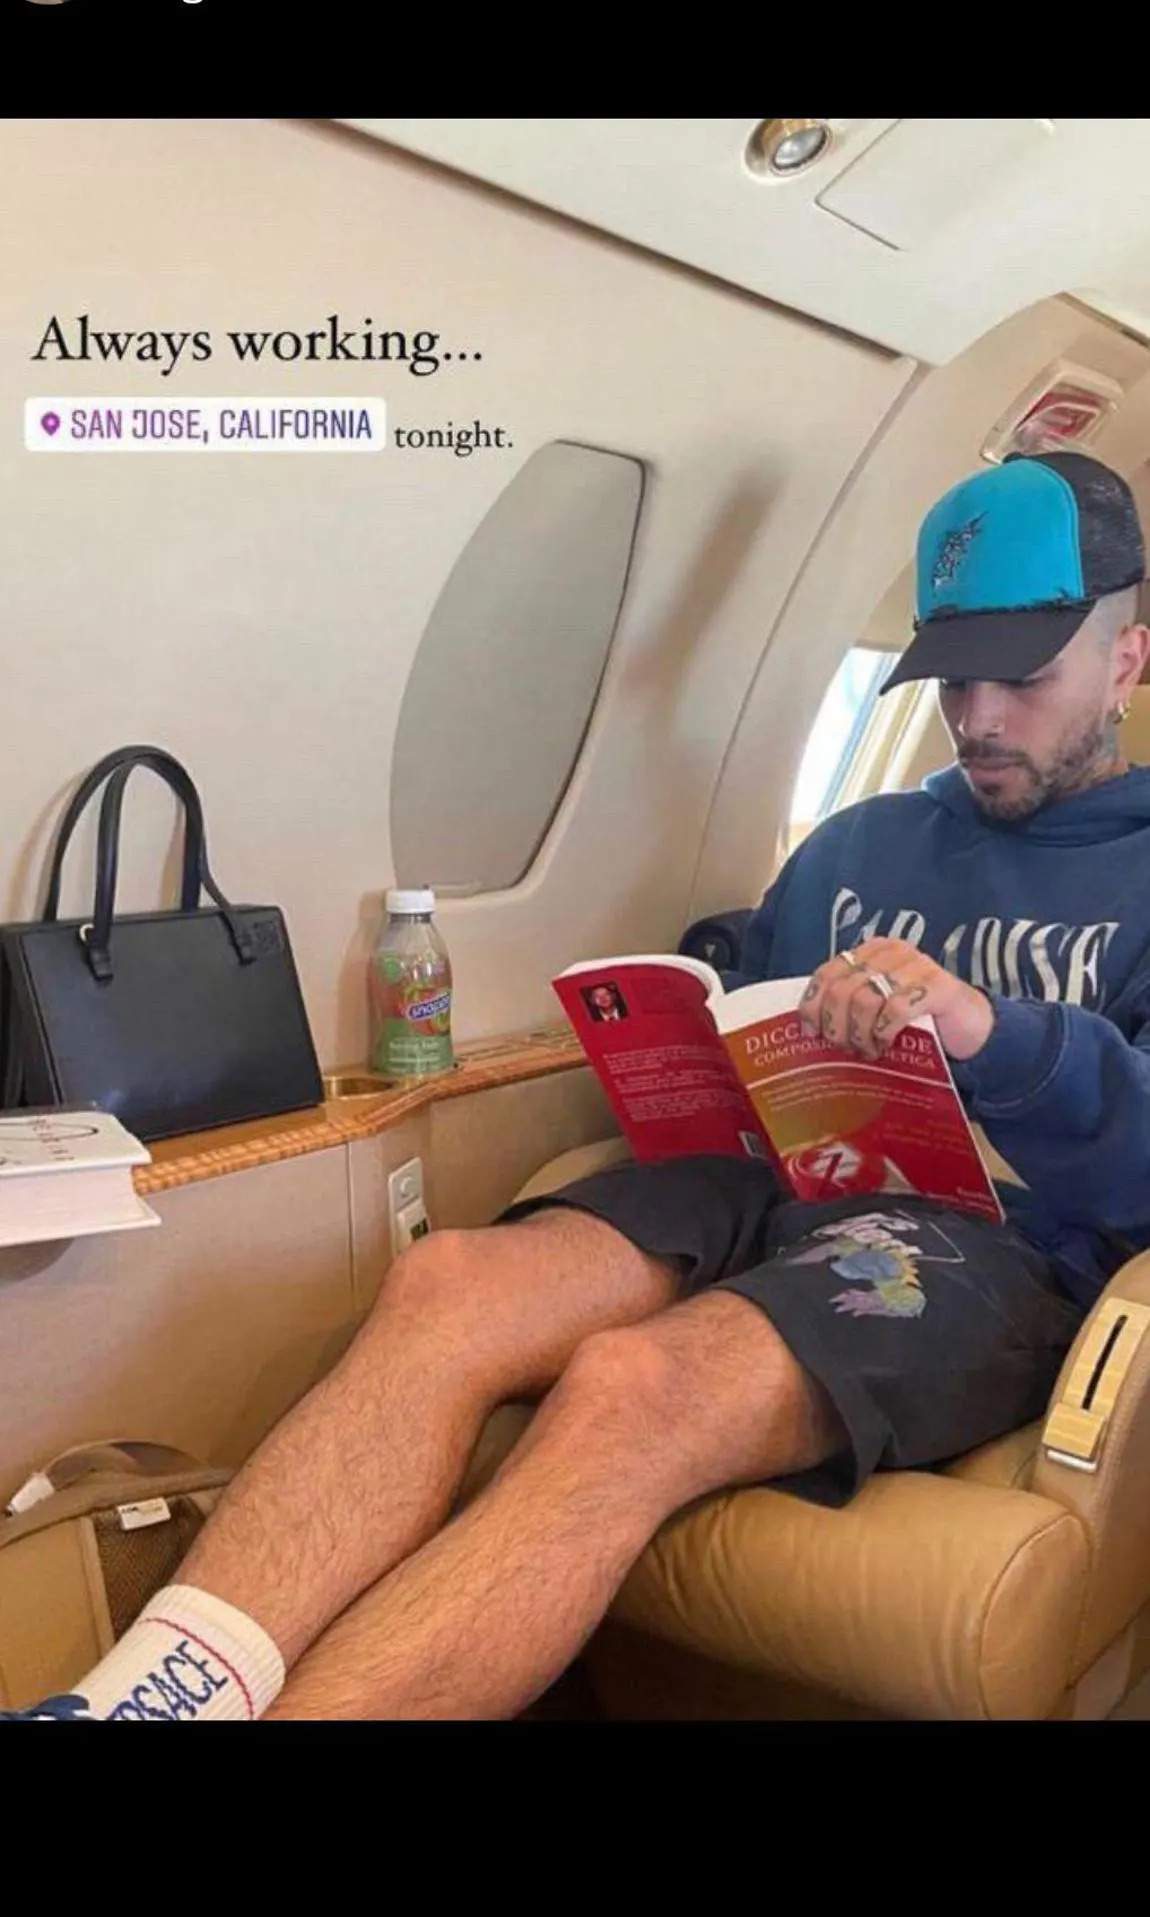 Rauw Alejandro sentado en un jet privado leyendo el libro mencionado